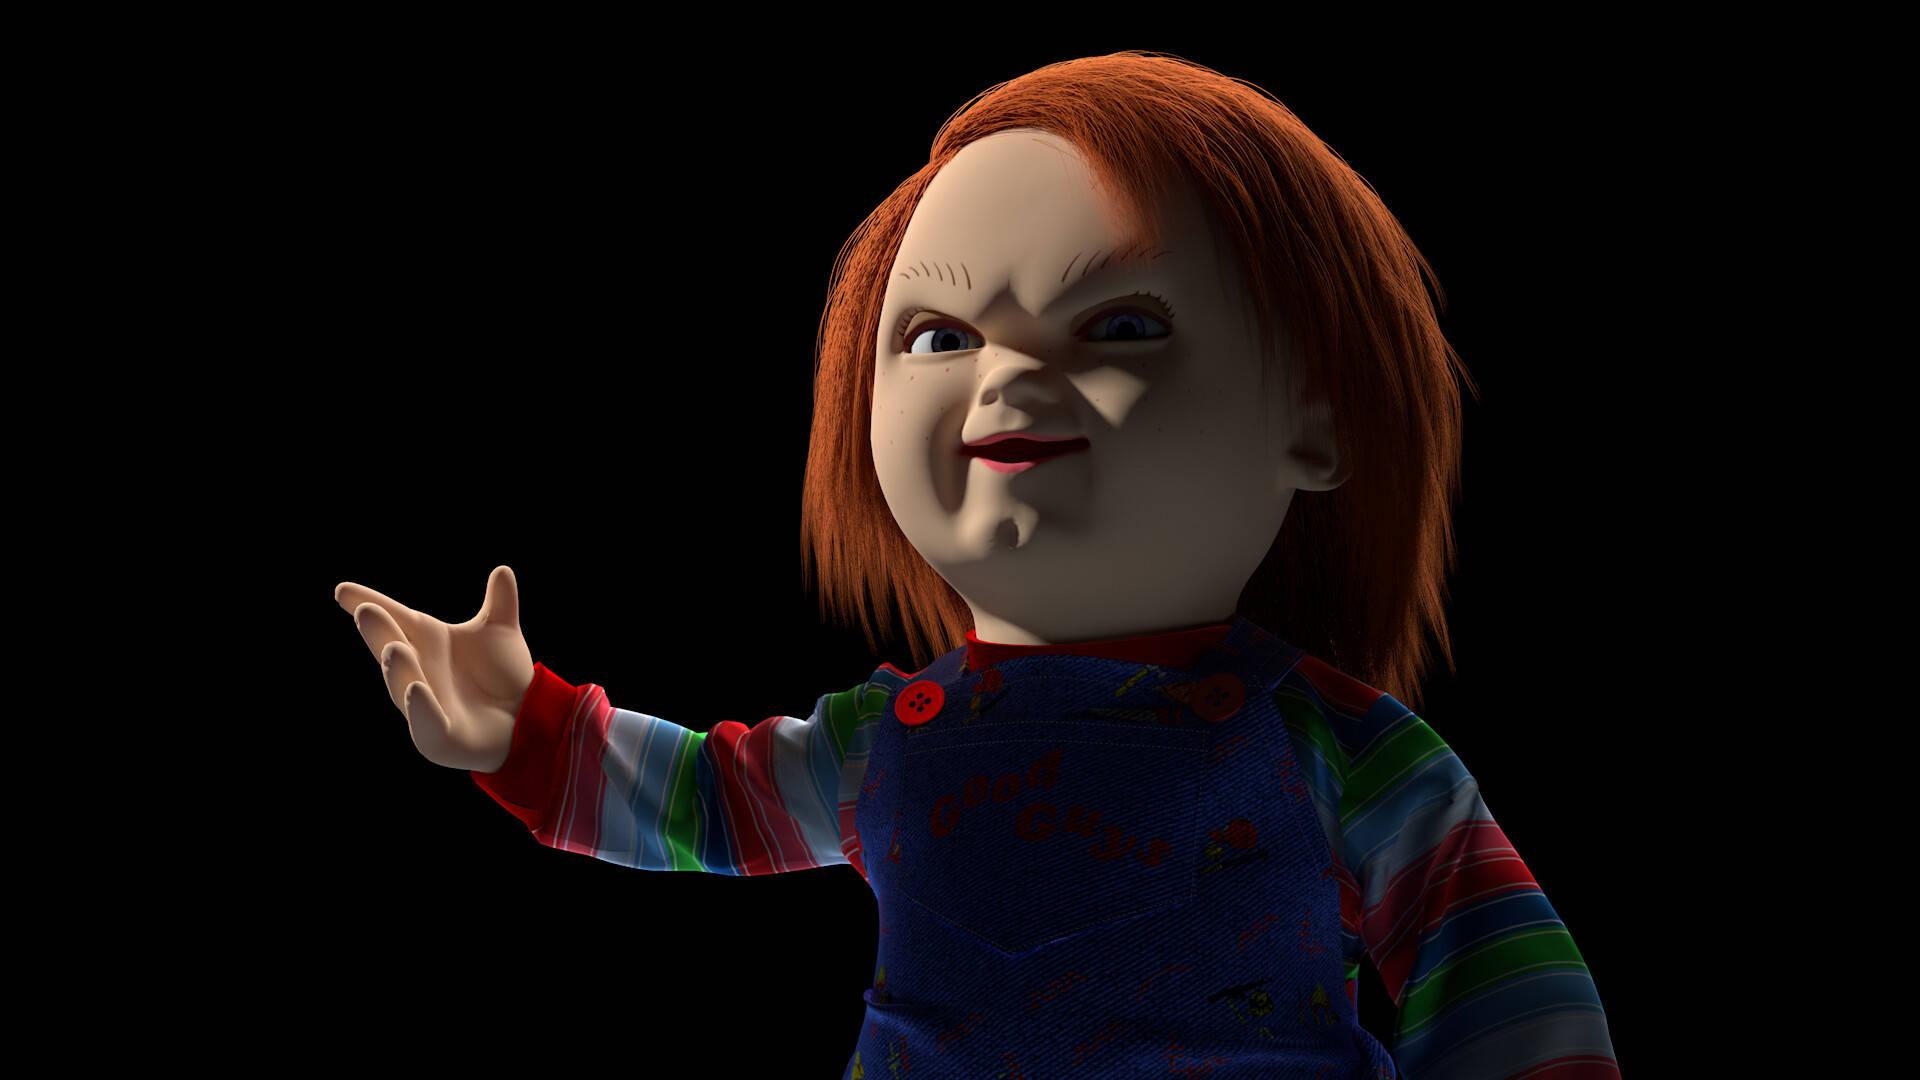 Child's Play 3d Chucky